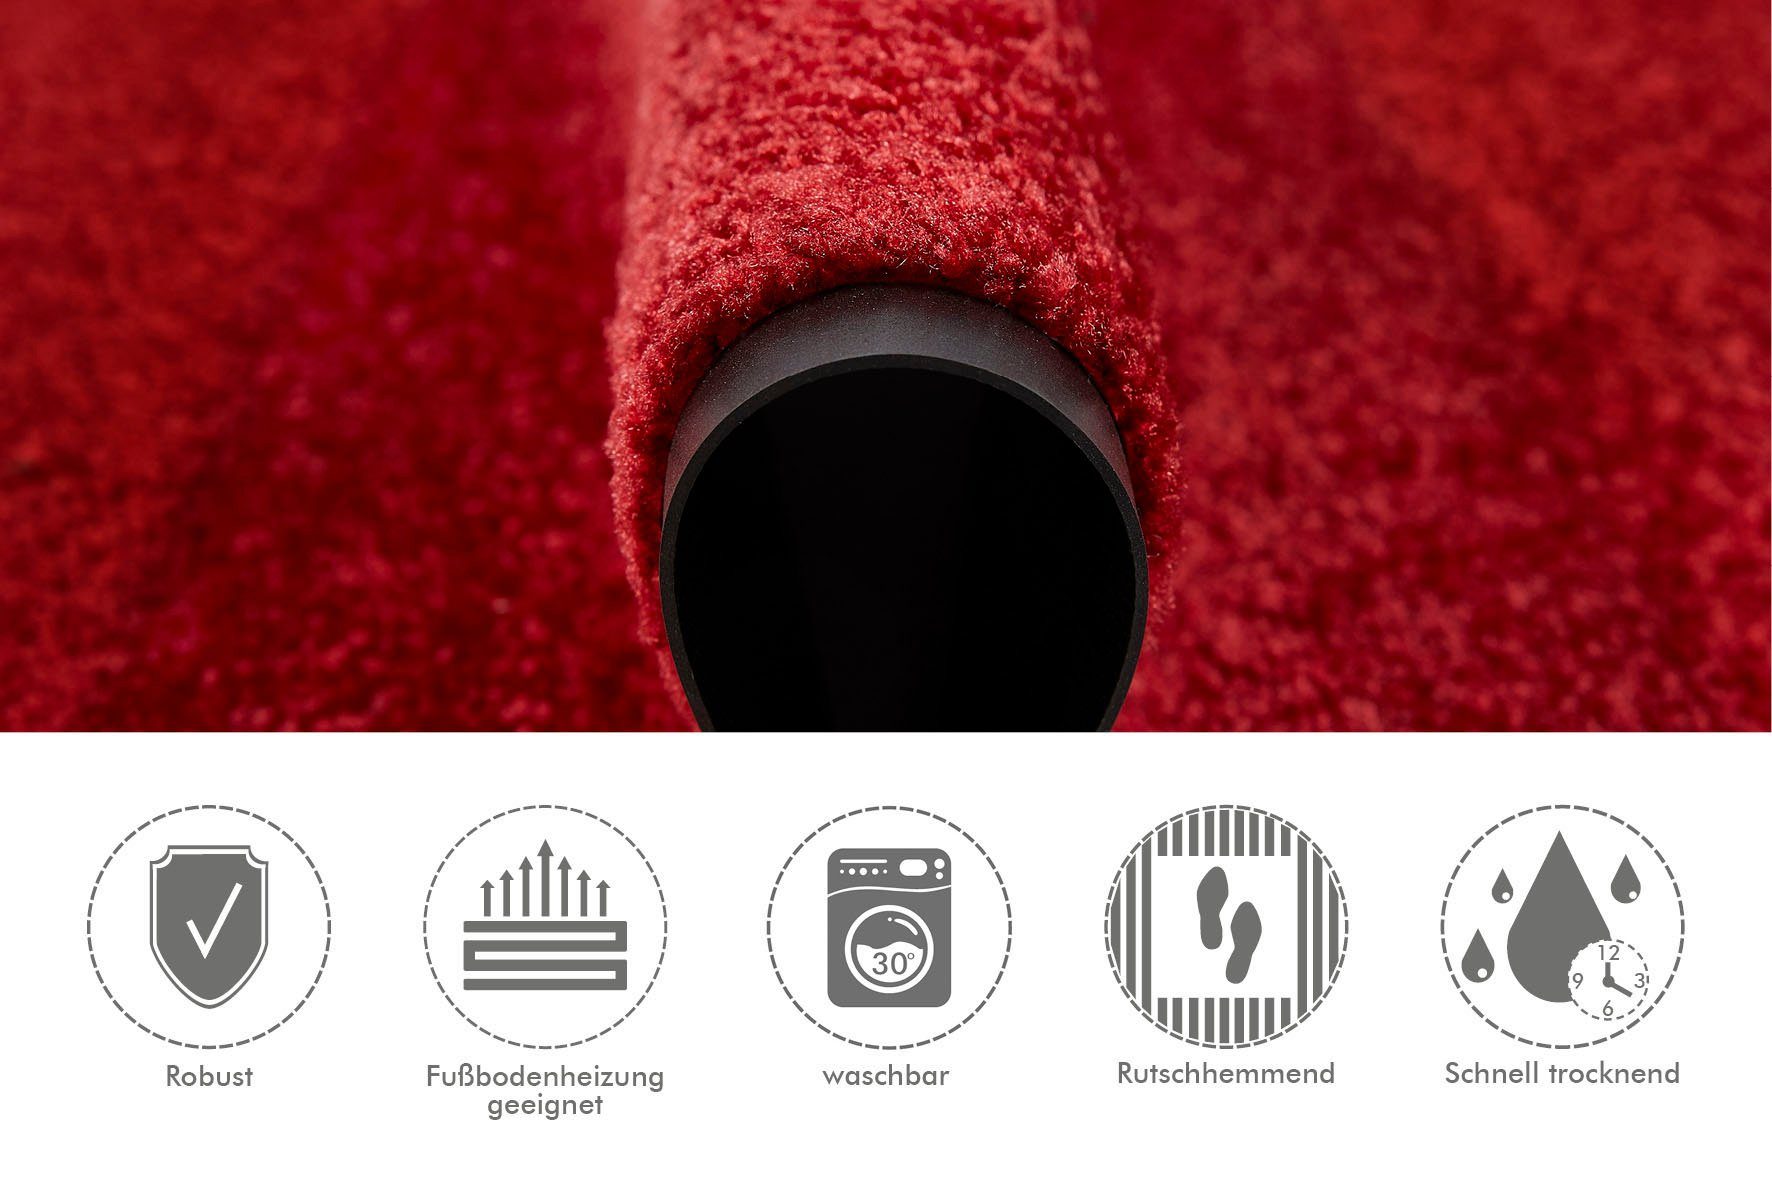 Herbst rot & Clean, Höhe: Schmutzfangmatte, Fußmatte rutschhemmend, Farben, rechteckig, Wash waschbar Uni mm, 7 &, Andiamo, Super